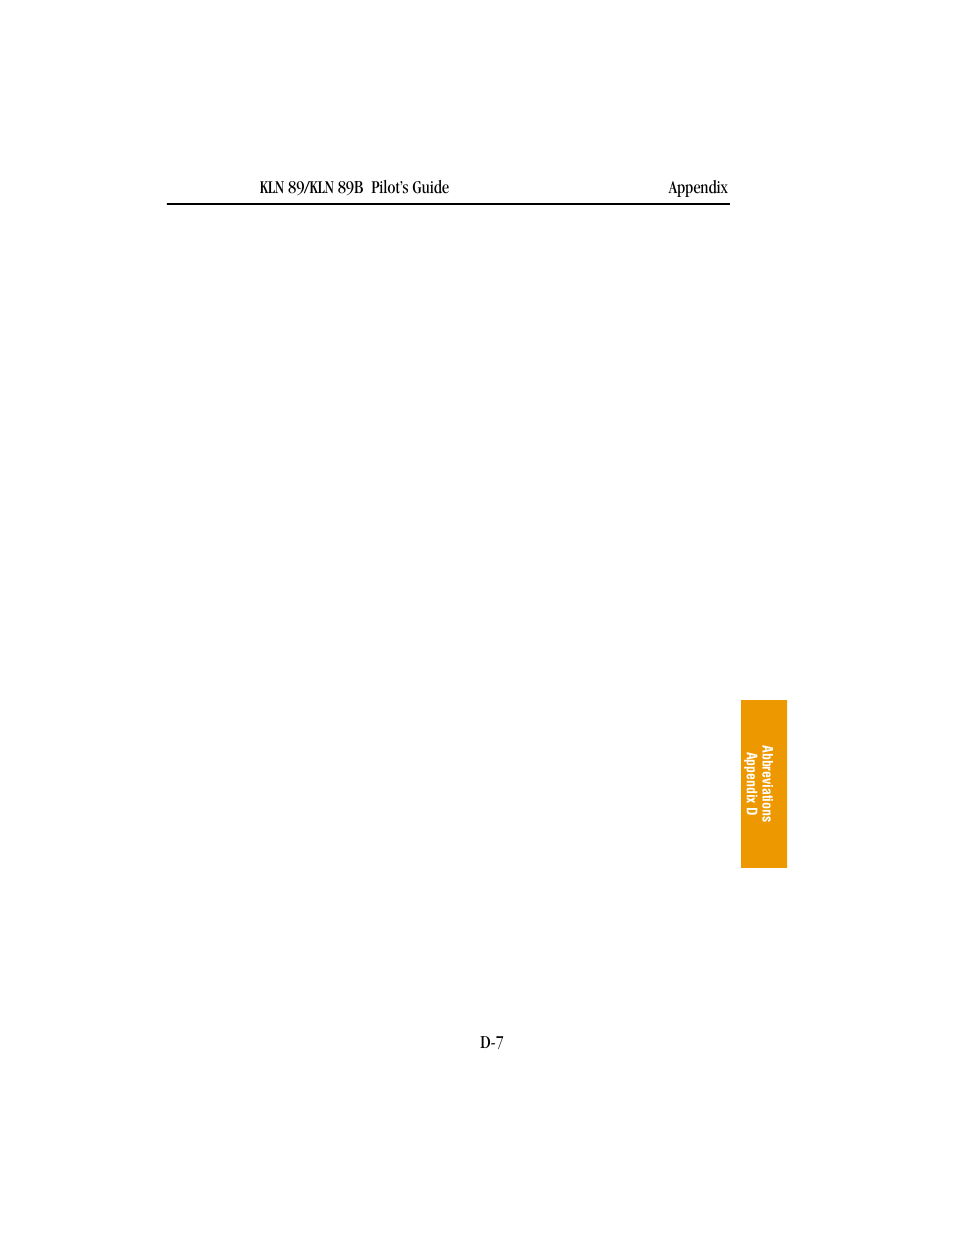 BendixKing KLN 89B - Pilots Guide User Manual | Page 214 / 246